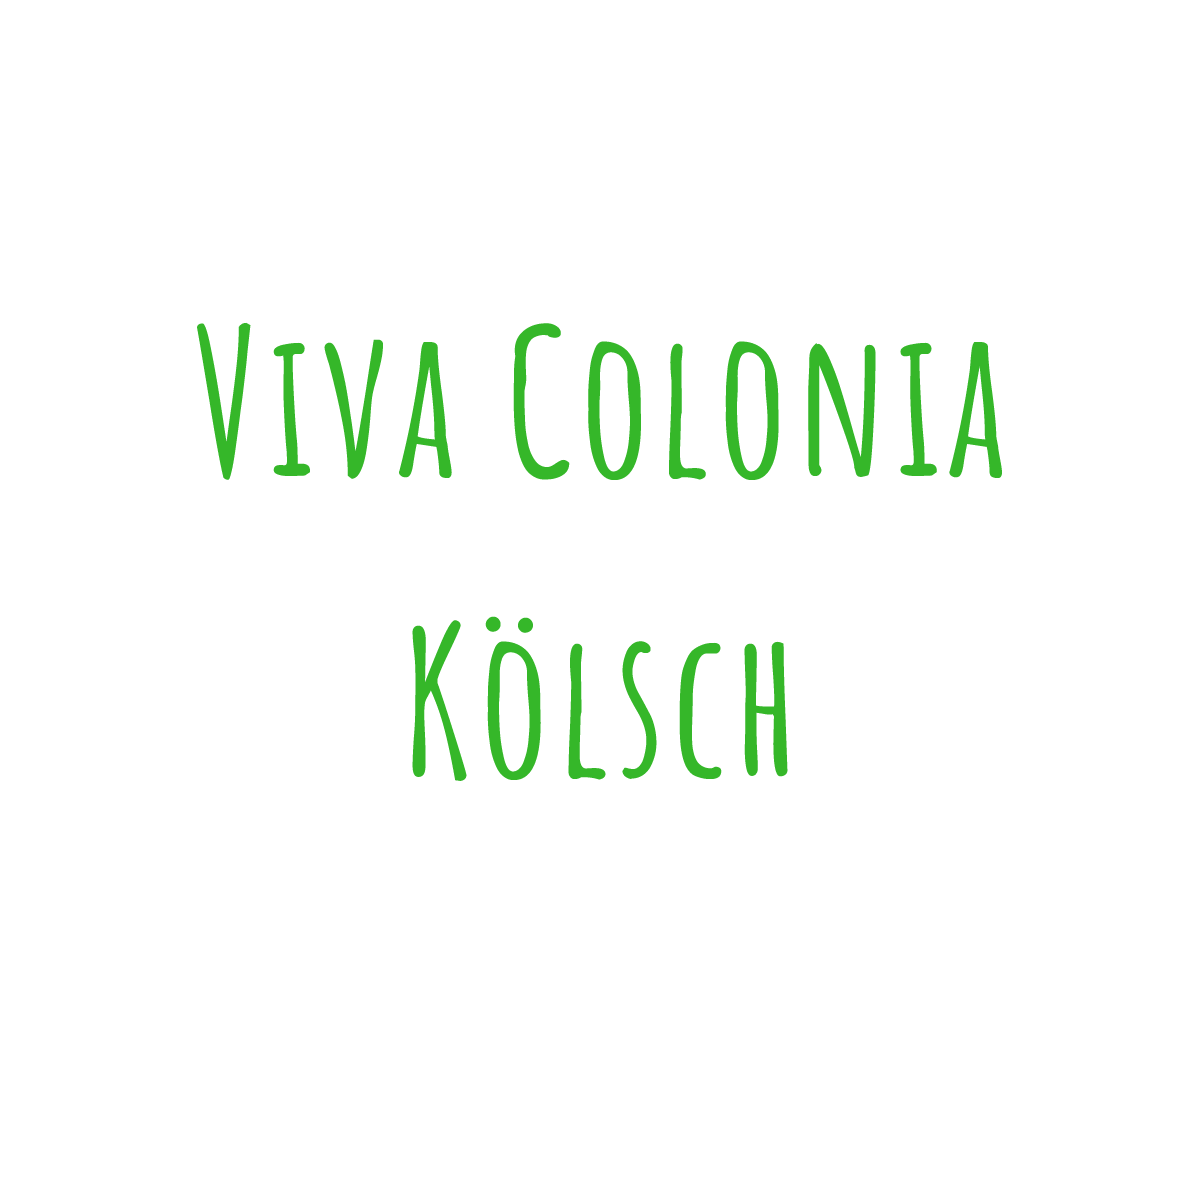 Bierrezept Viva Colonia Kölsch